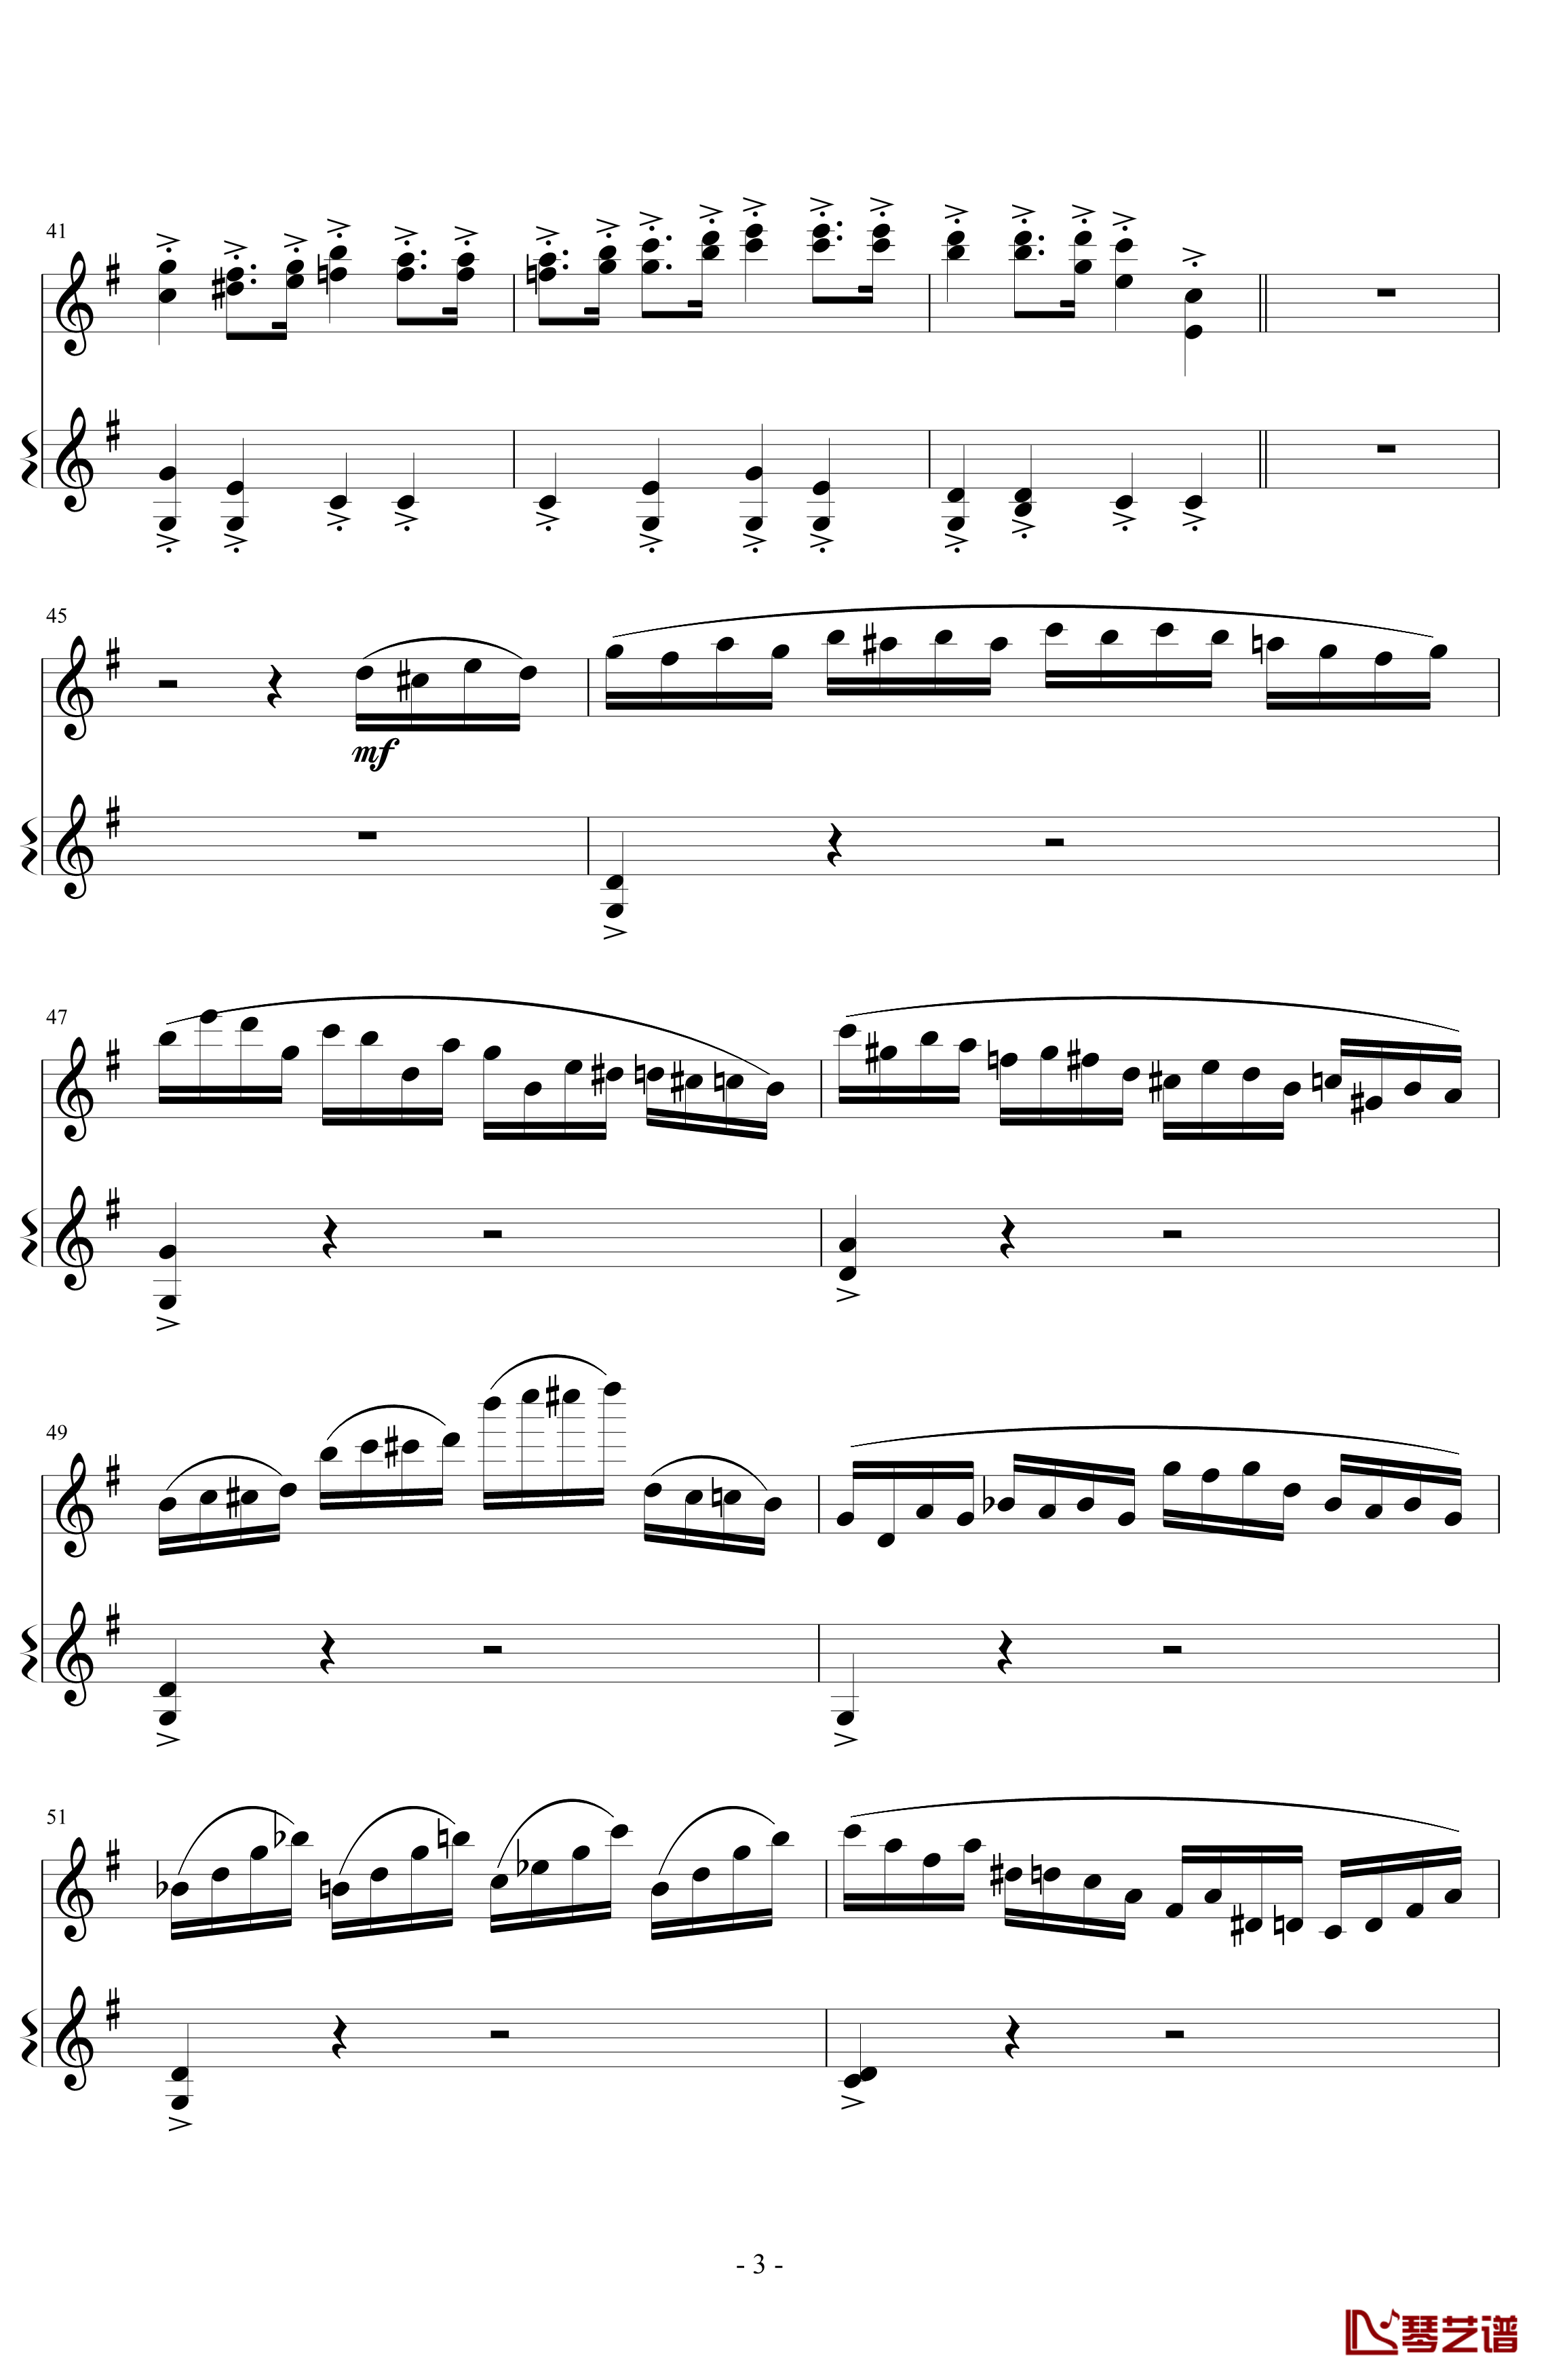 意大利国歌变奏曲钢琴谱-DXF3